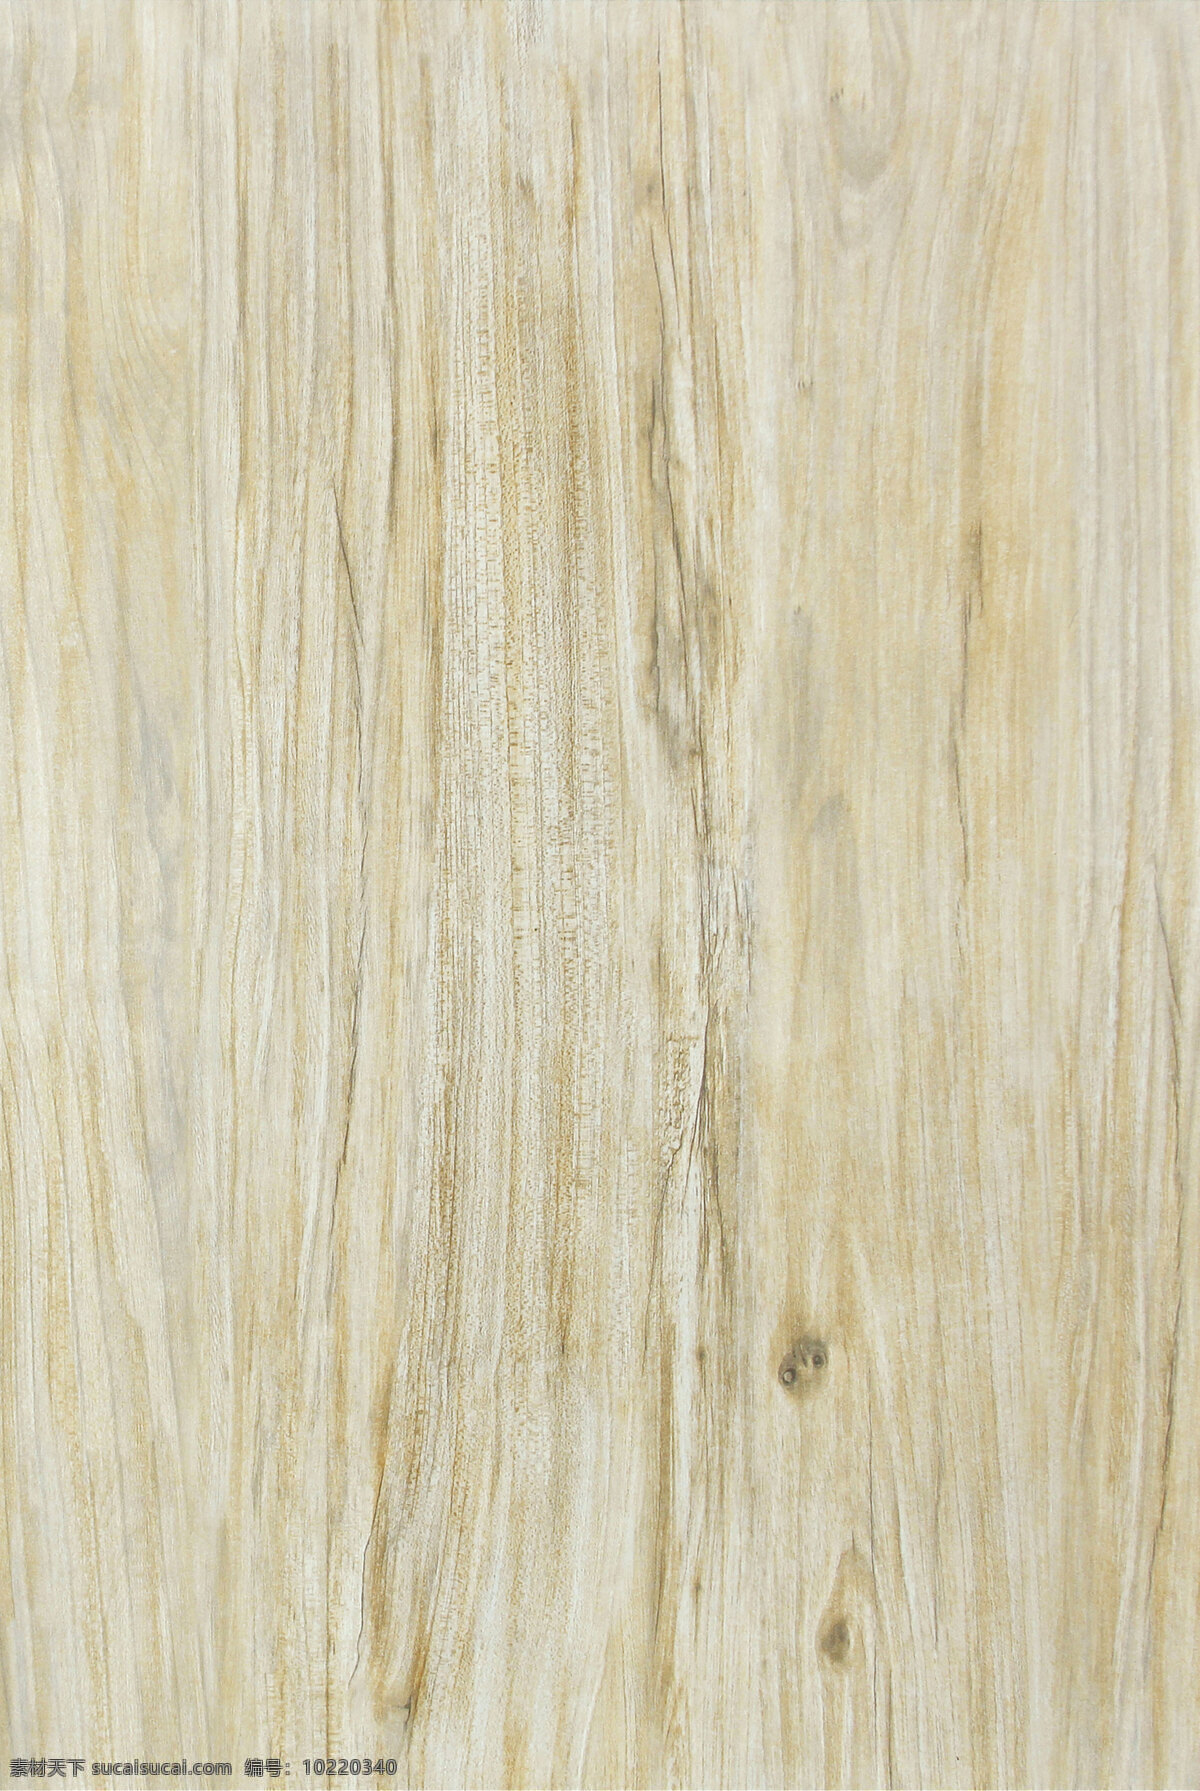 巴西 橡木 材质 贴图 格式 木纹